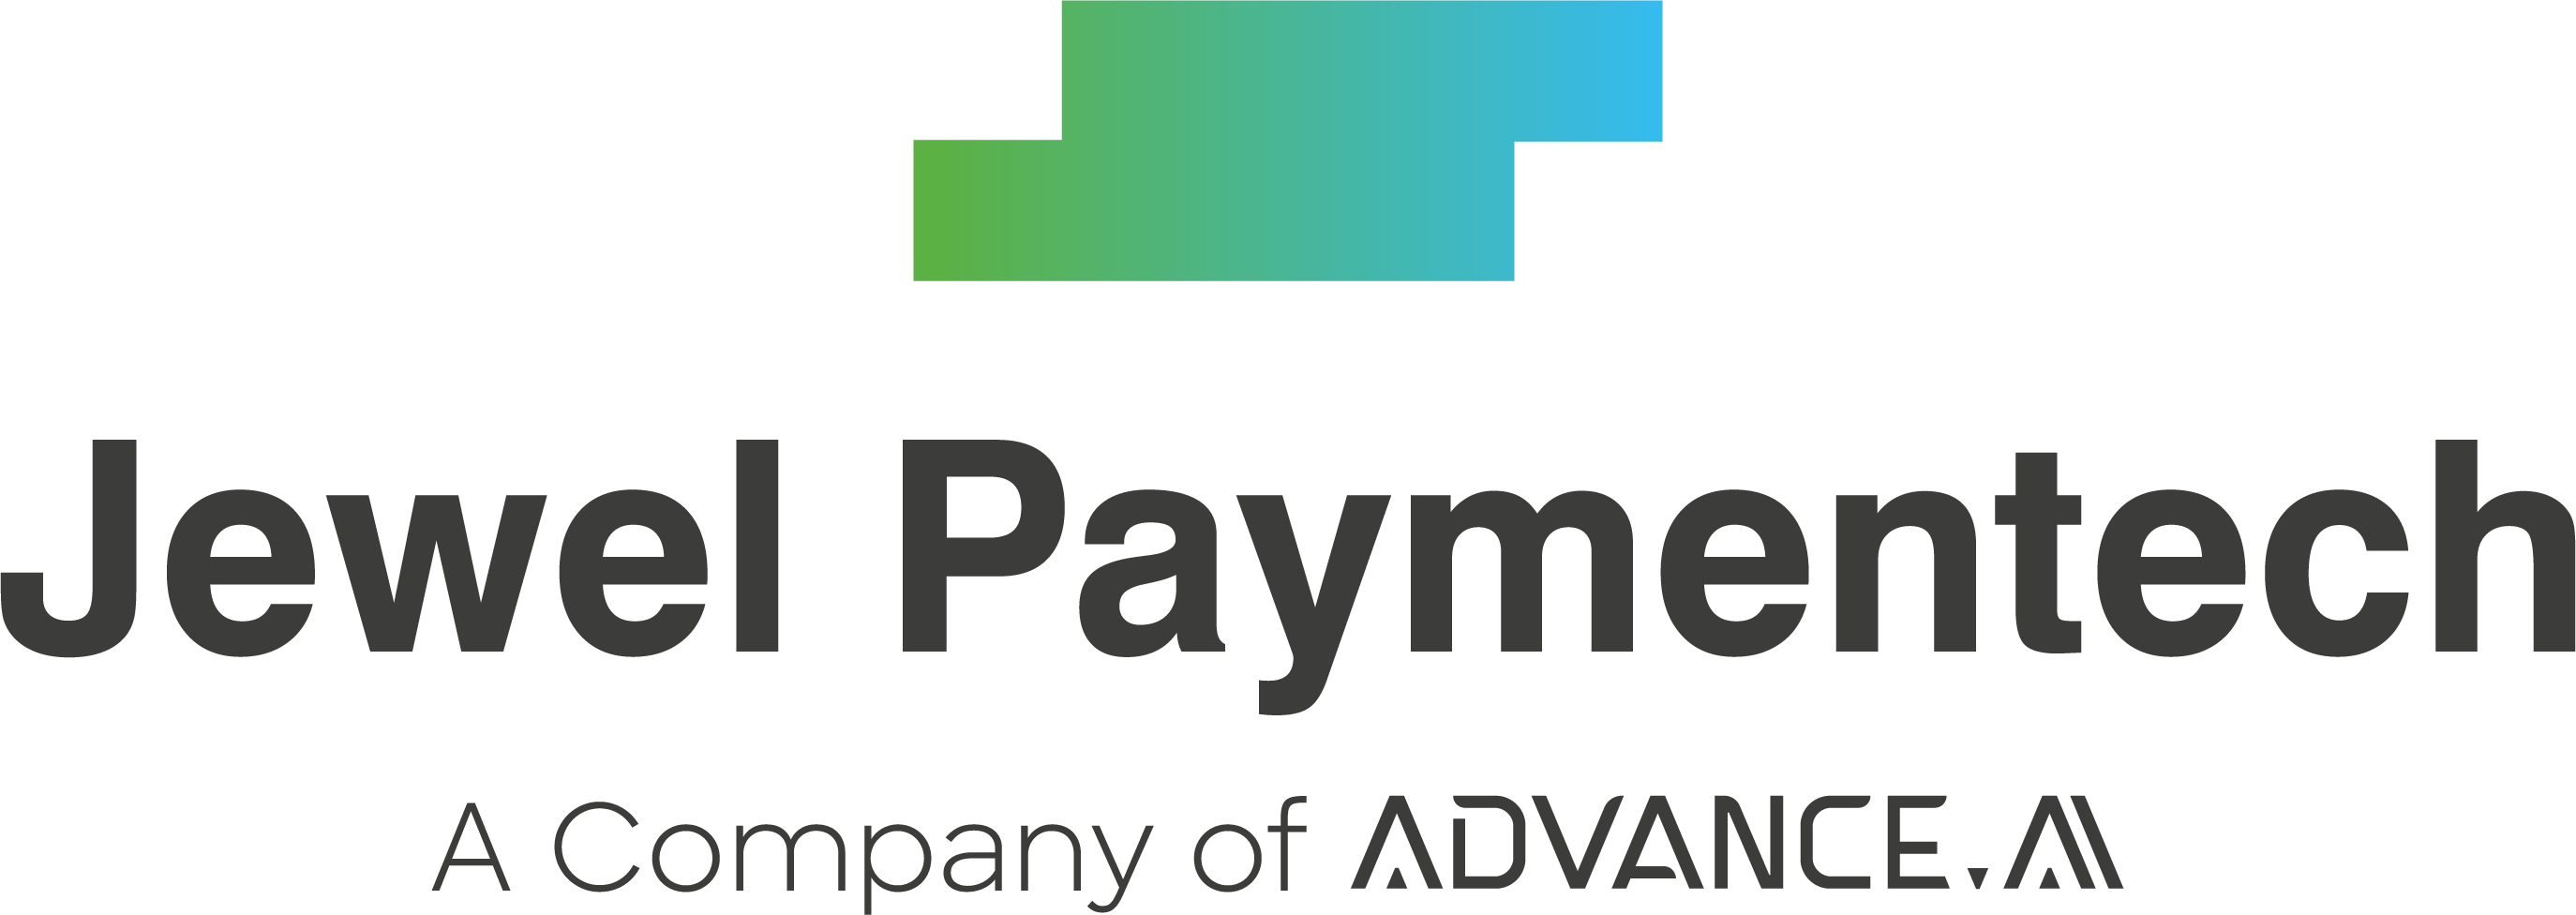 jewel-paymentech-logo